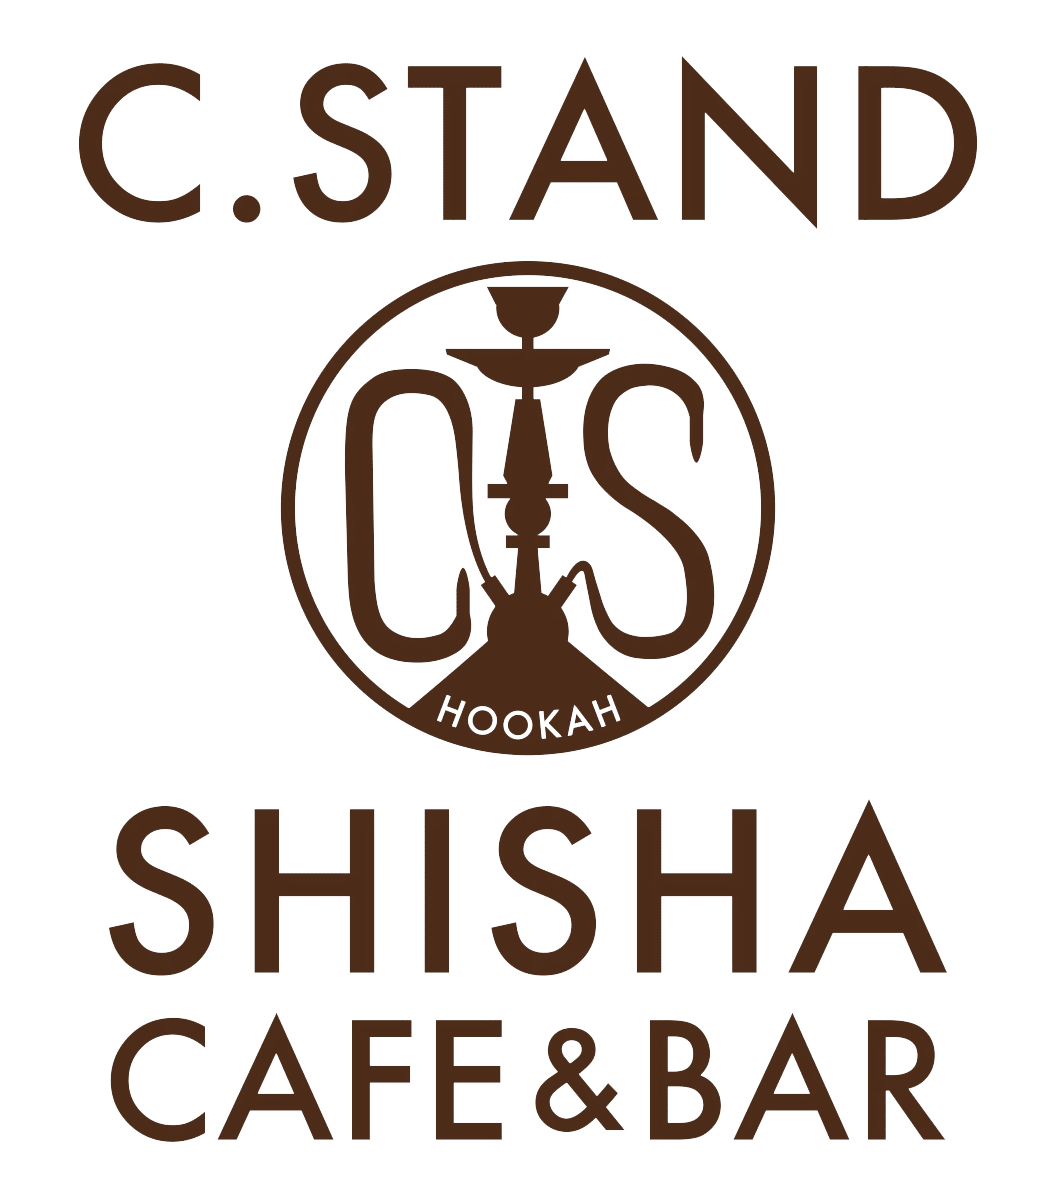 Shisha Cafe & Bar C.STAND 橫濱西口